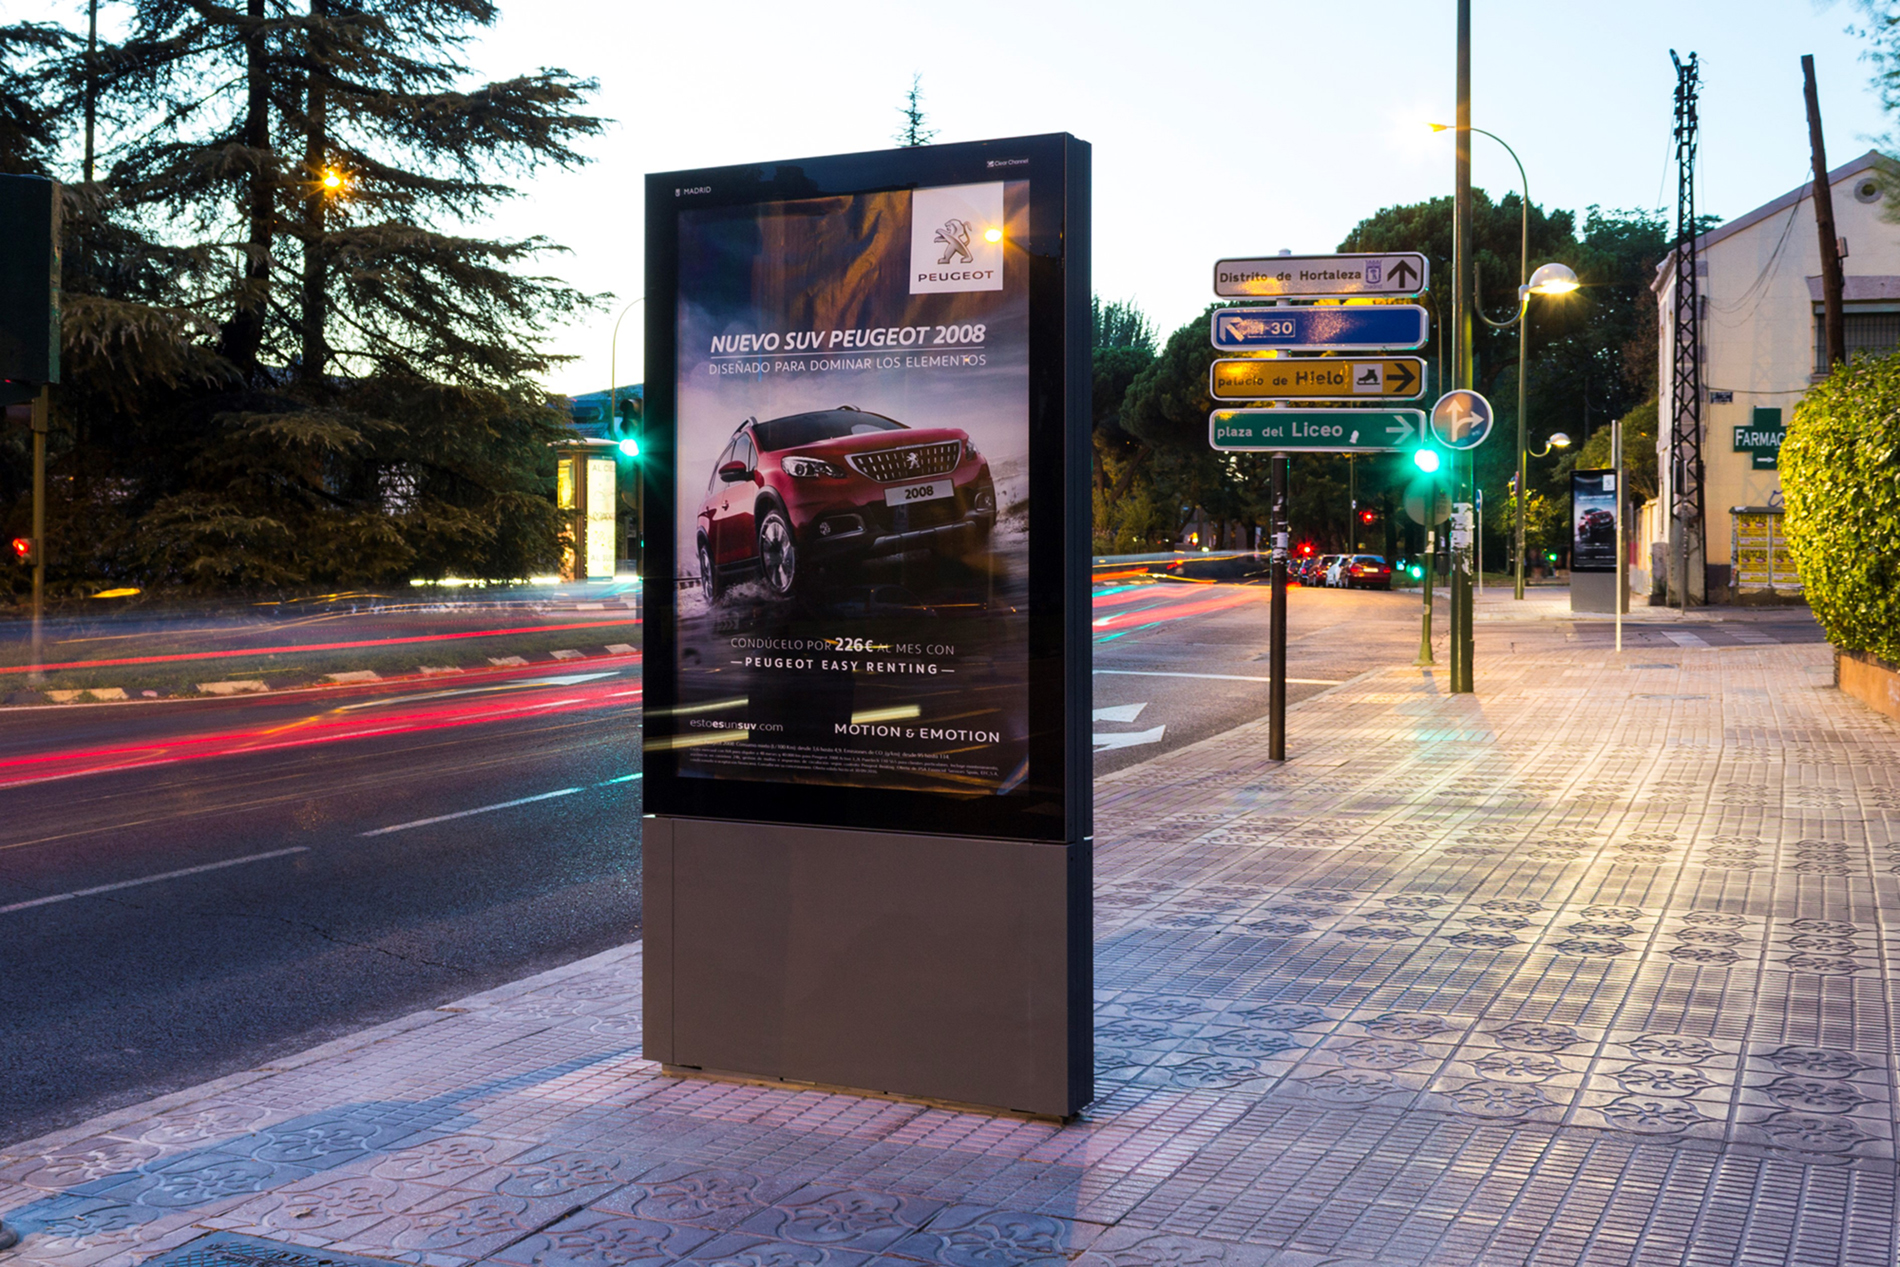 El nuevo Peugeot 2008 protagonista de la primera campaña de publicidad del nuevo mobiliario urbano de Clear Channel en Madrid